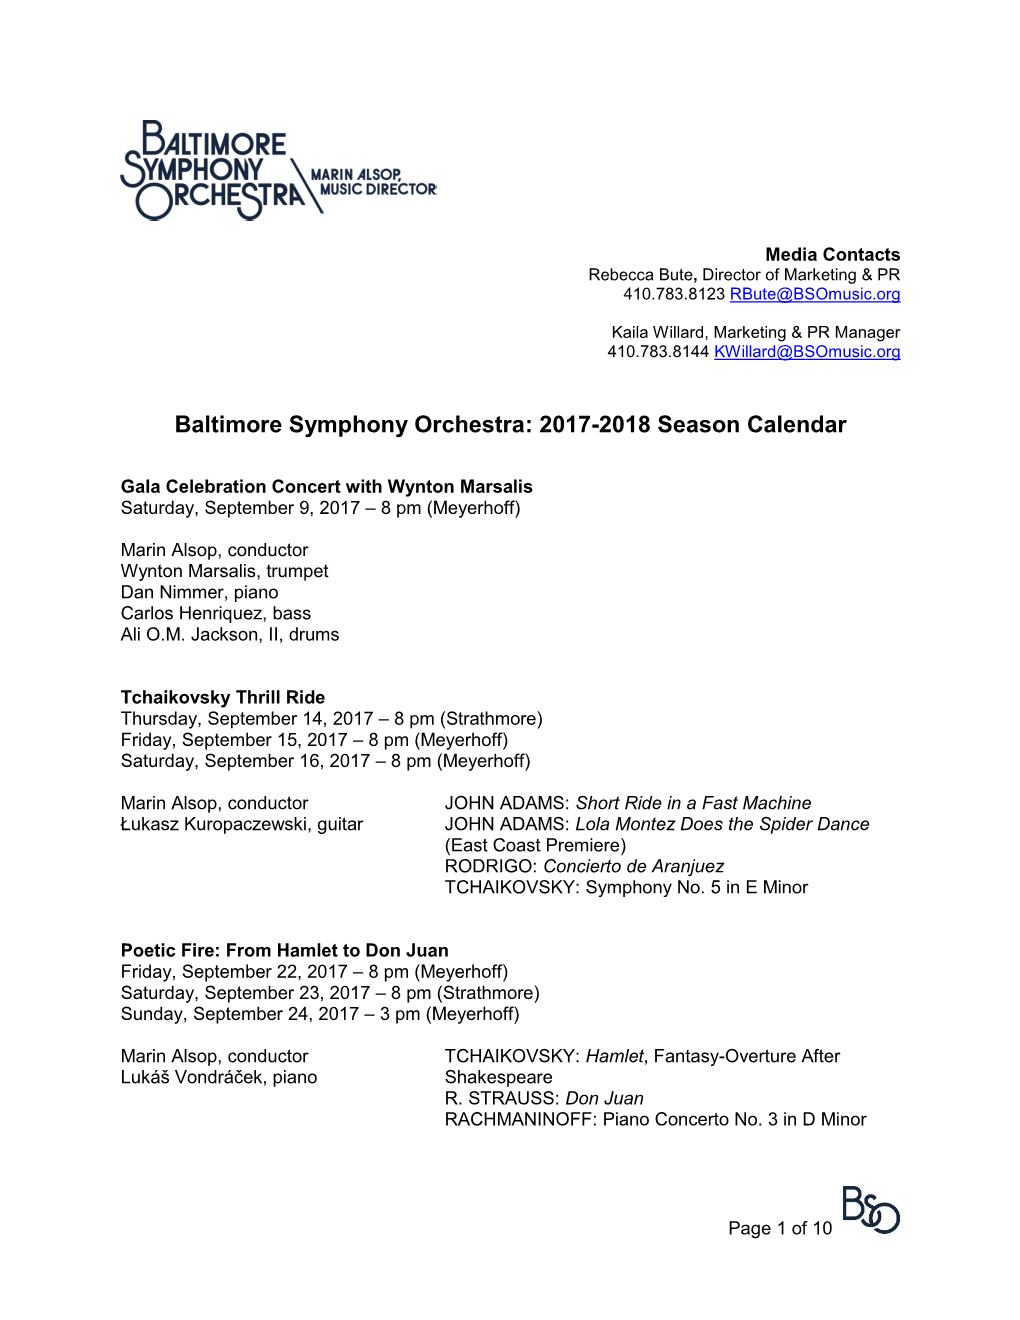 Baltimore Symphony Orchestra: 2017-2018 Season Calendar